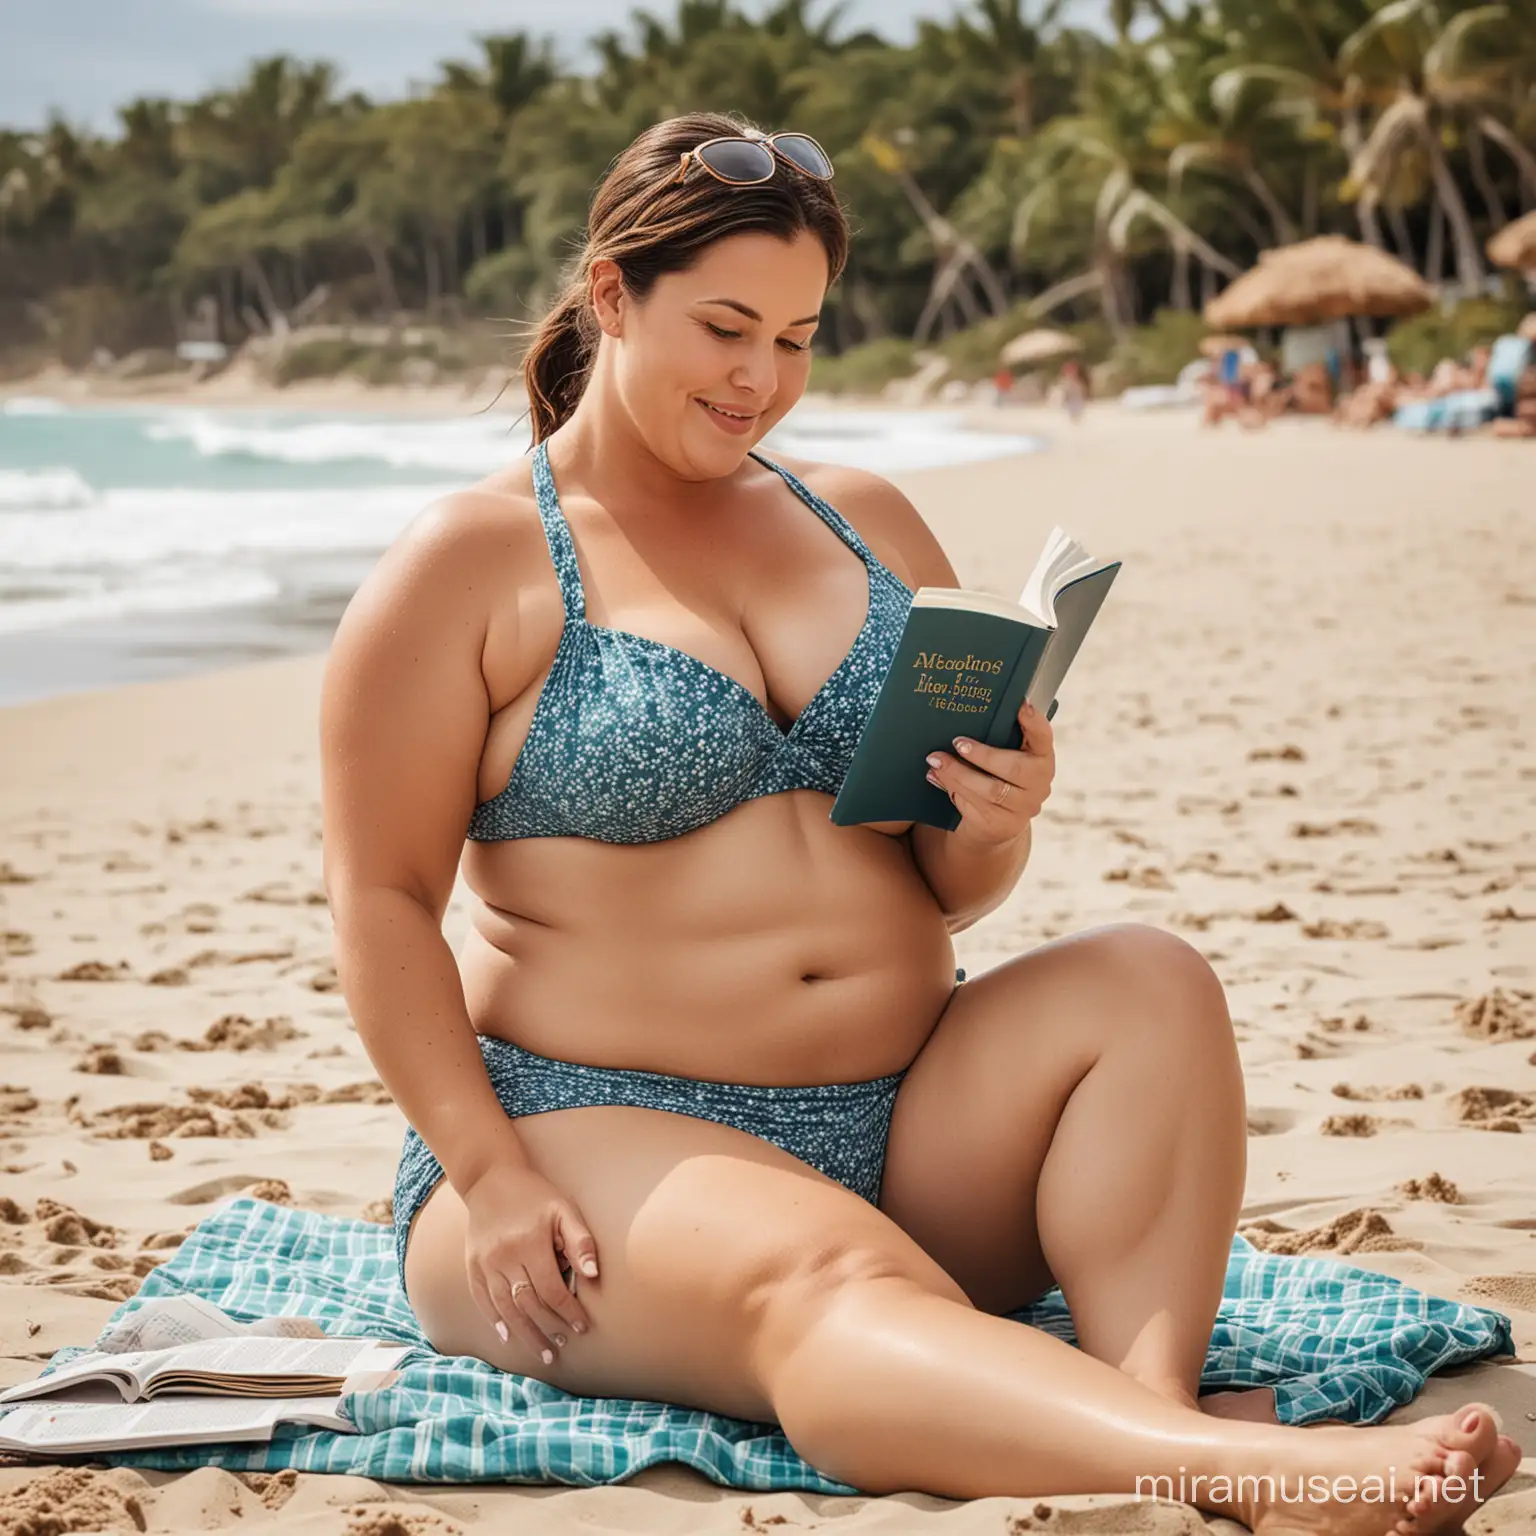 Chubby Woman Enjoying Beach Reading in Bikini